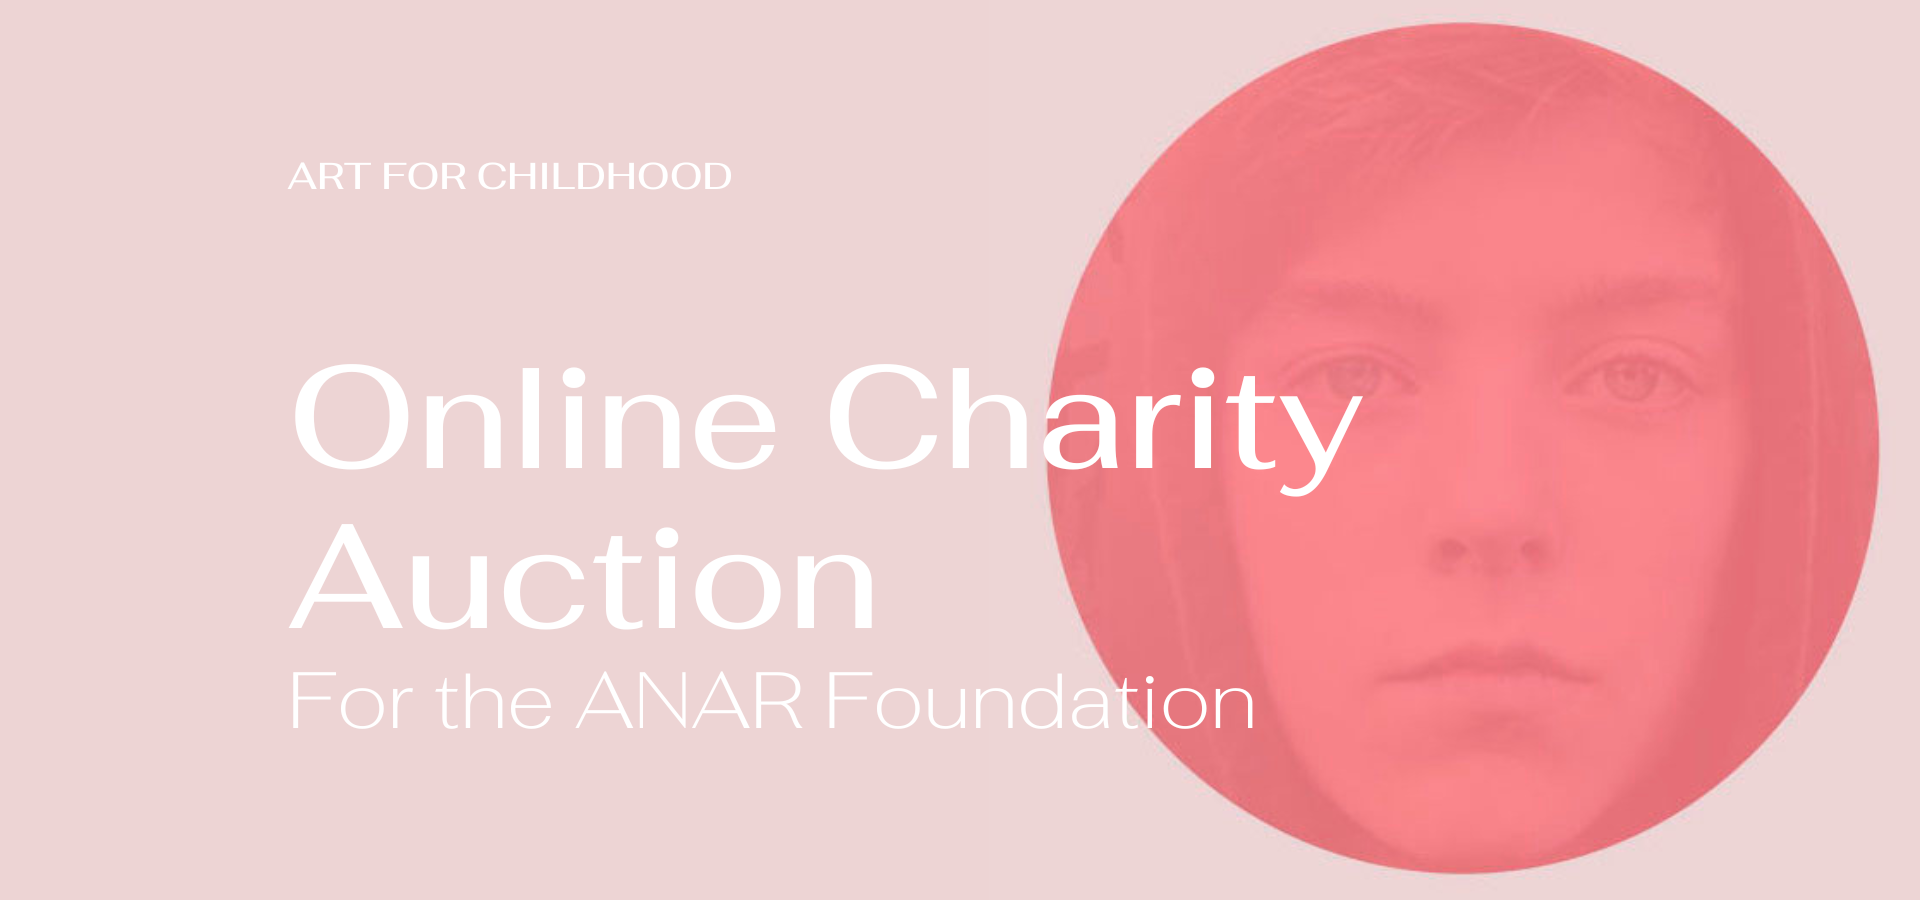 Arte por la infancia - Subasta Benéfica en beneficio de la Fundación ANAR